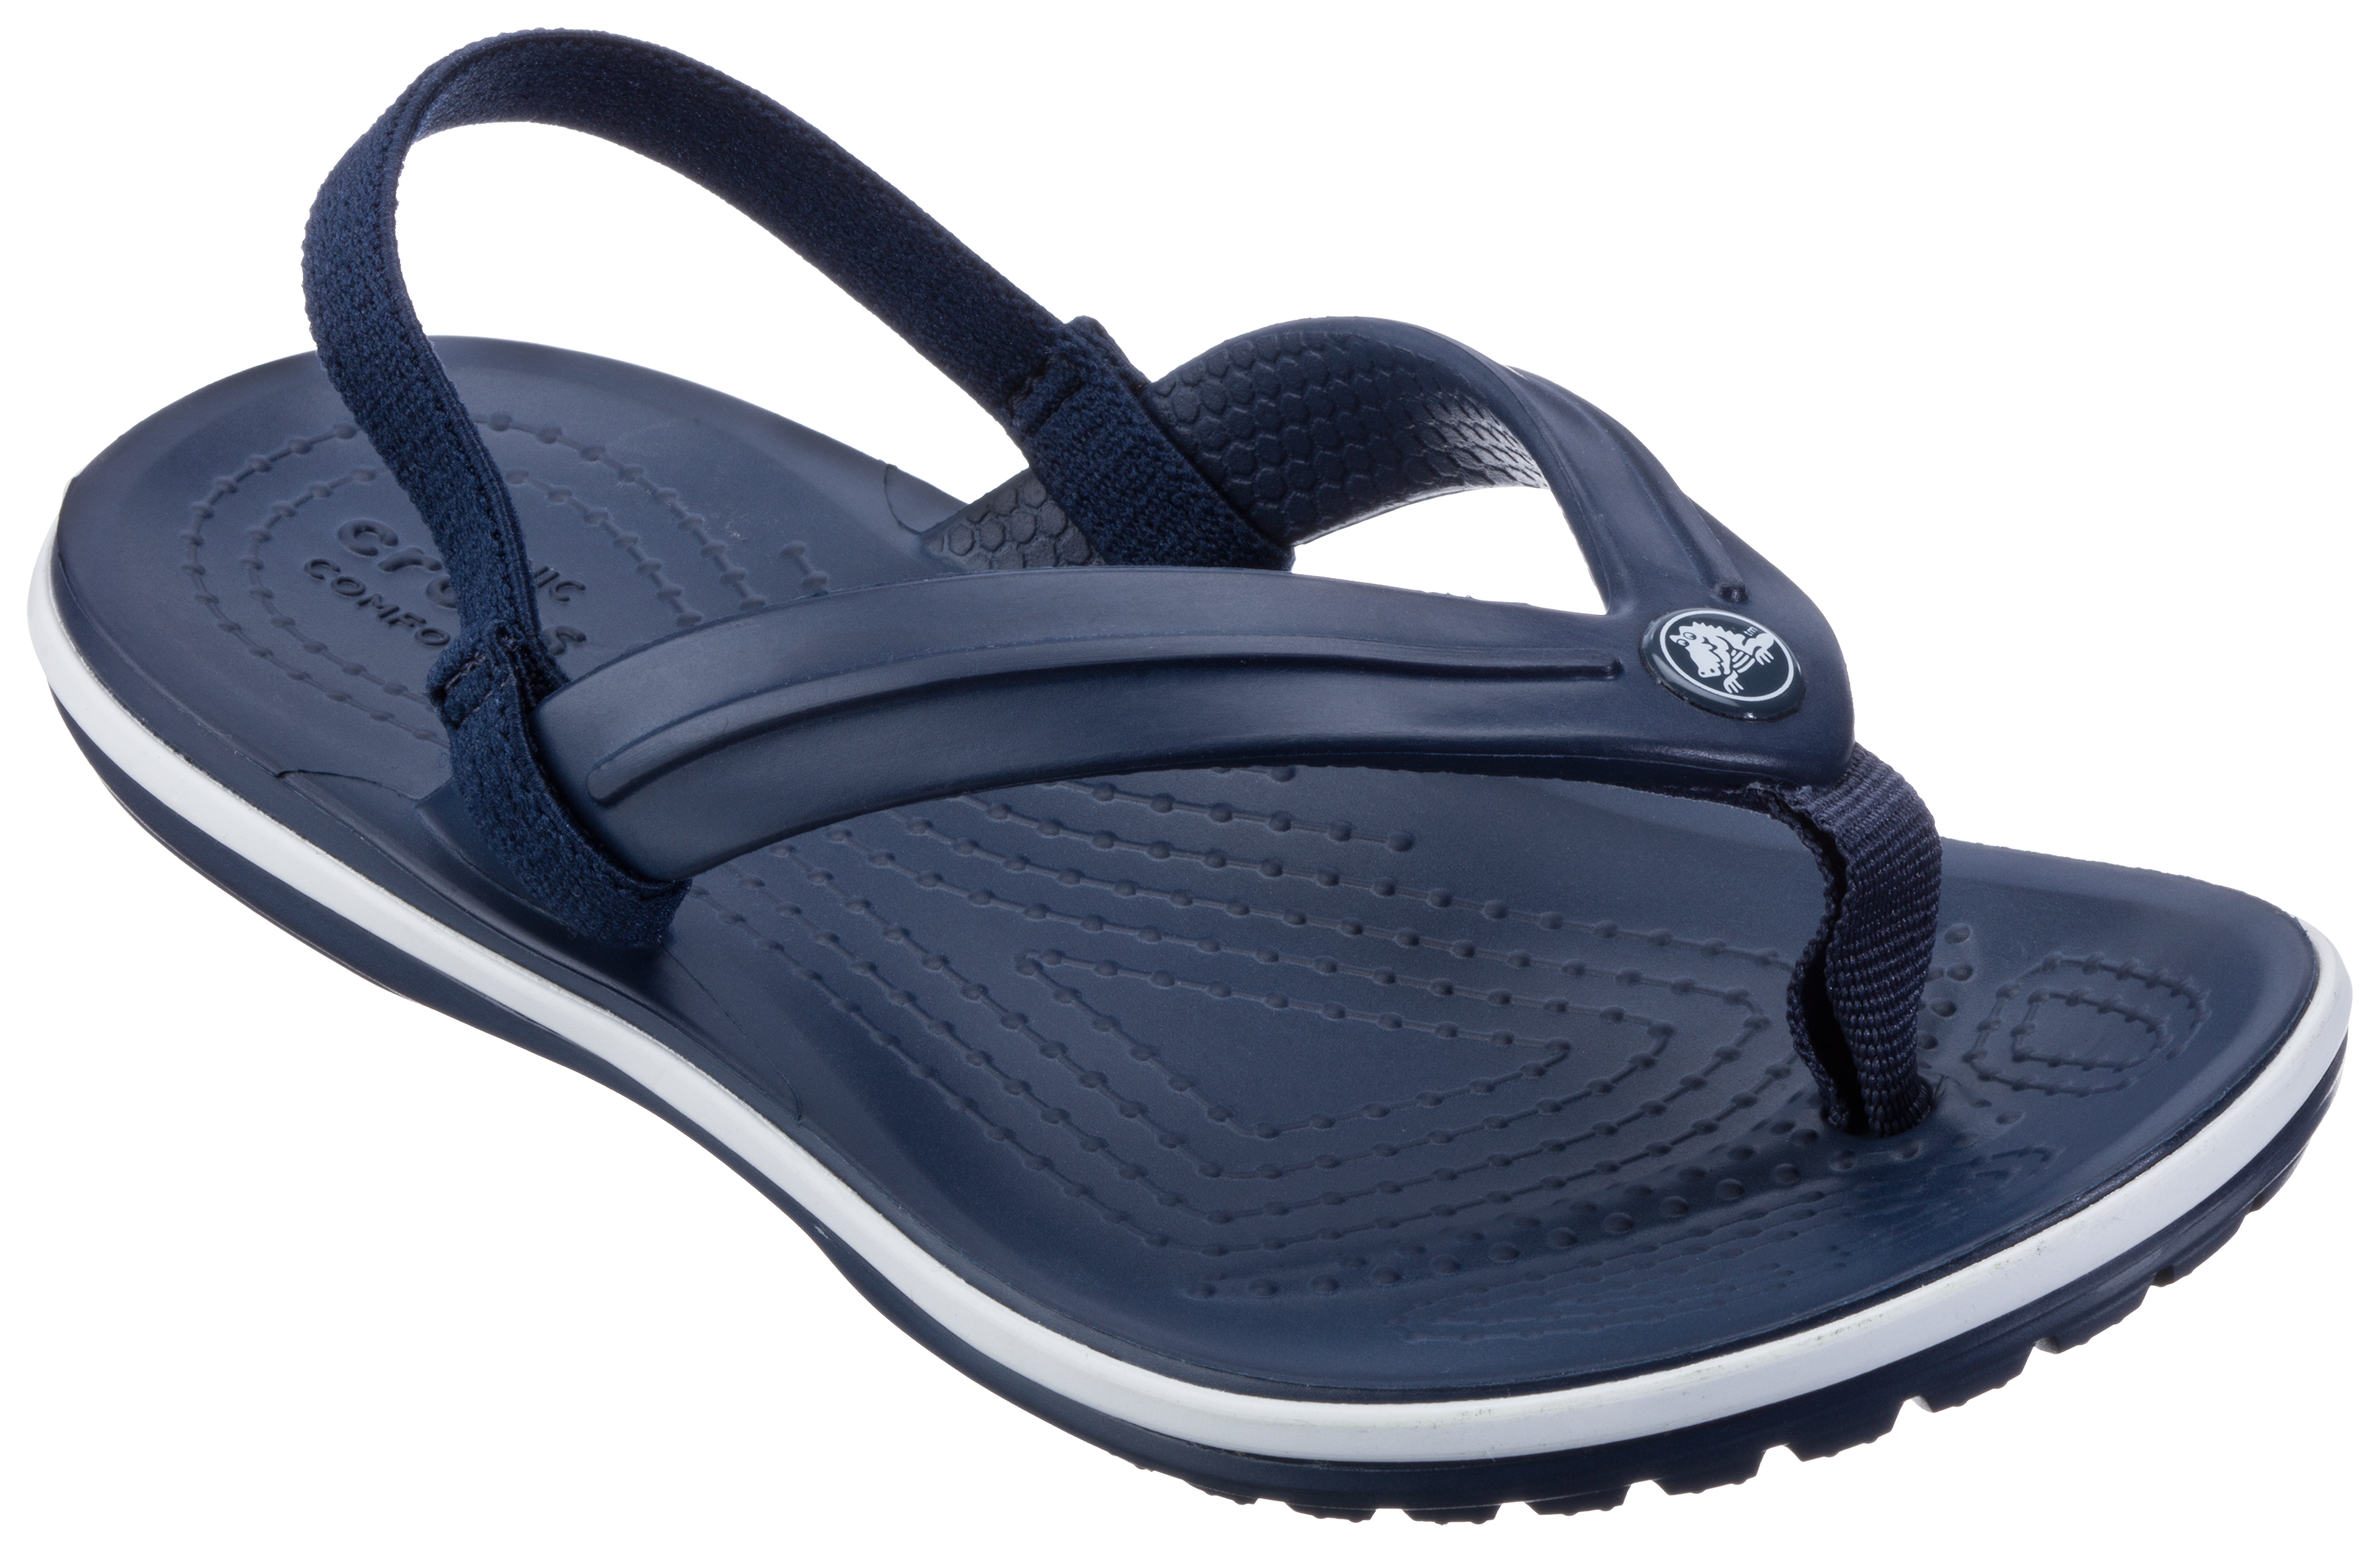 Crocs Crocband Strap Flip Sandals for Toddlers or Kids | Bass Pro Shops